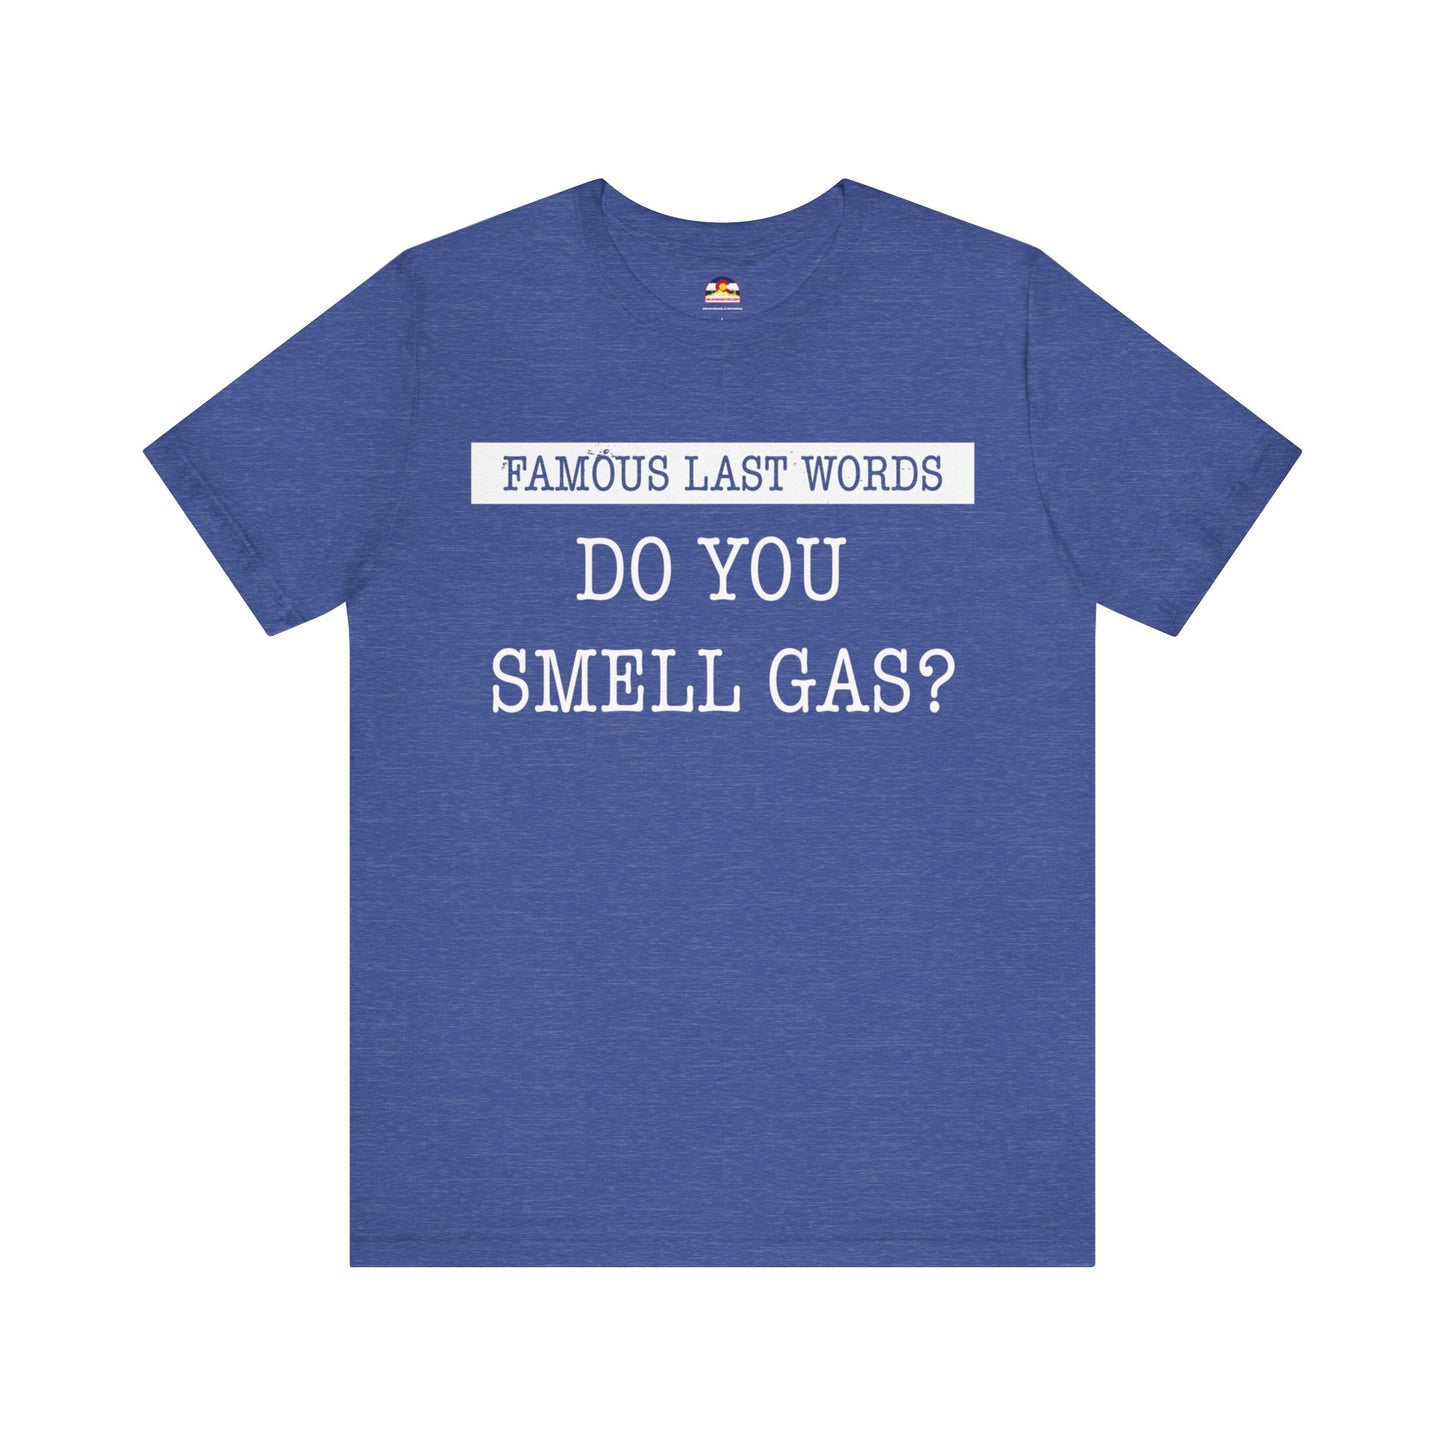 FLW "Do You Smell Gas?" T-Shirt